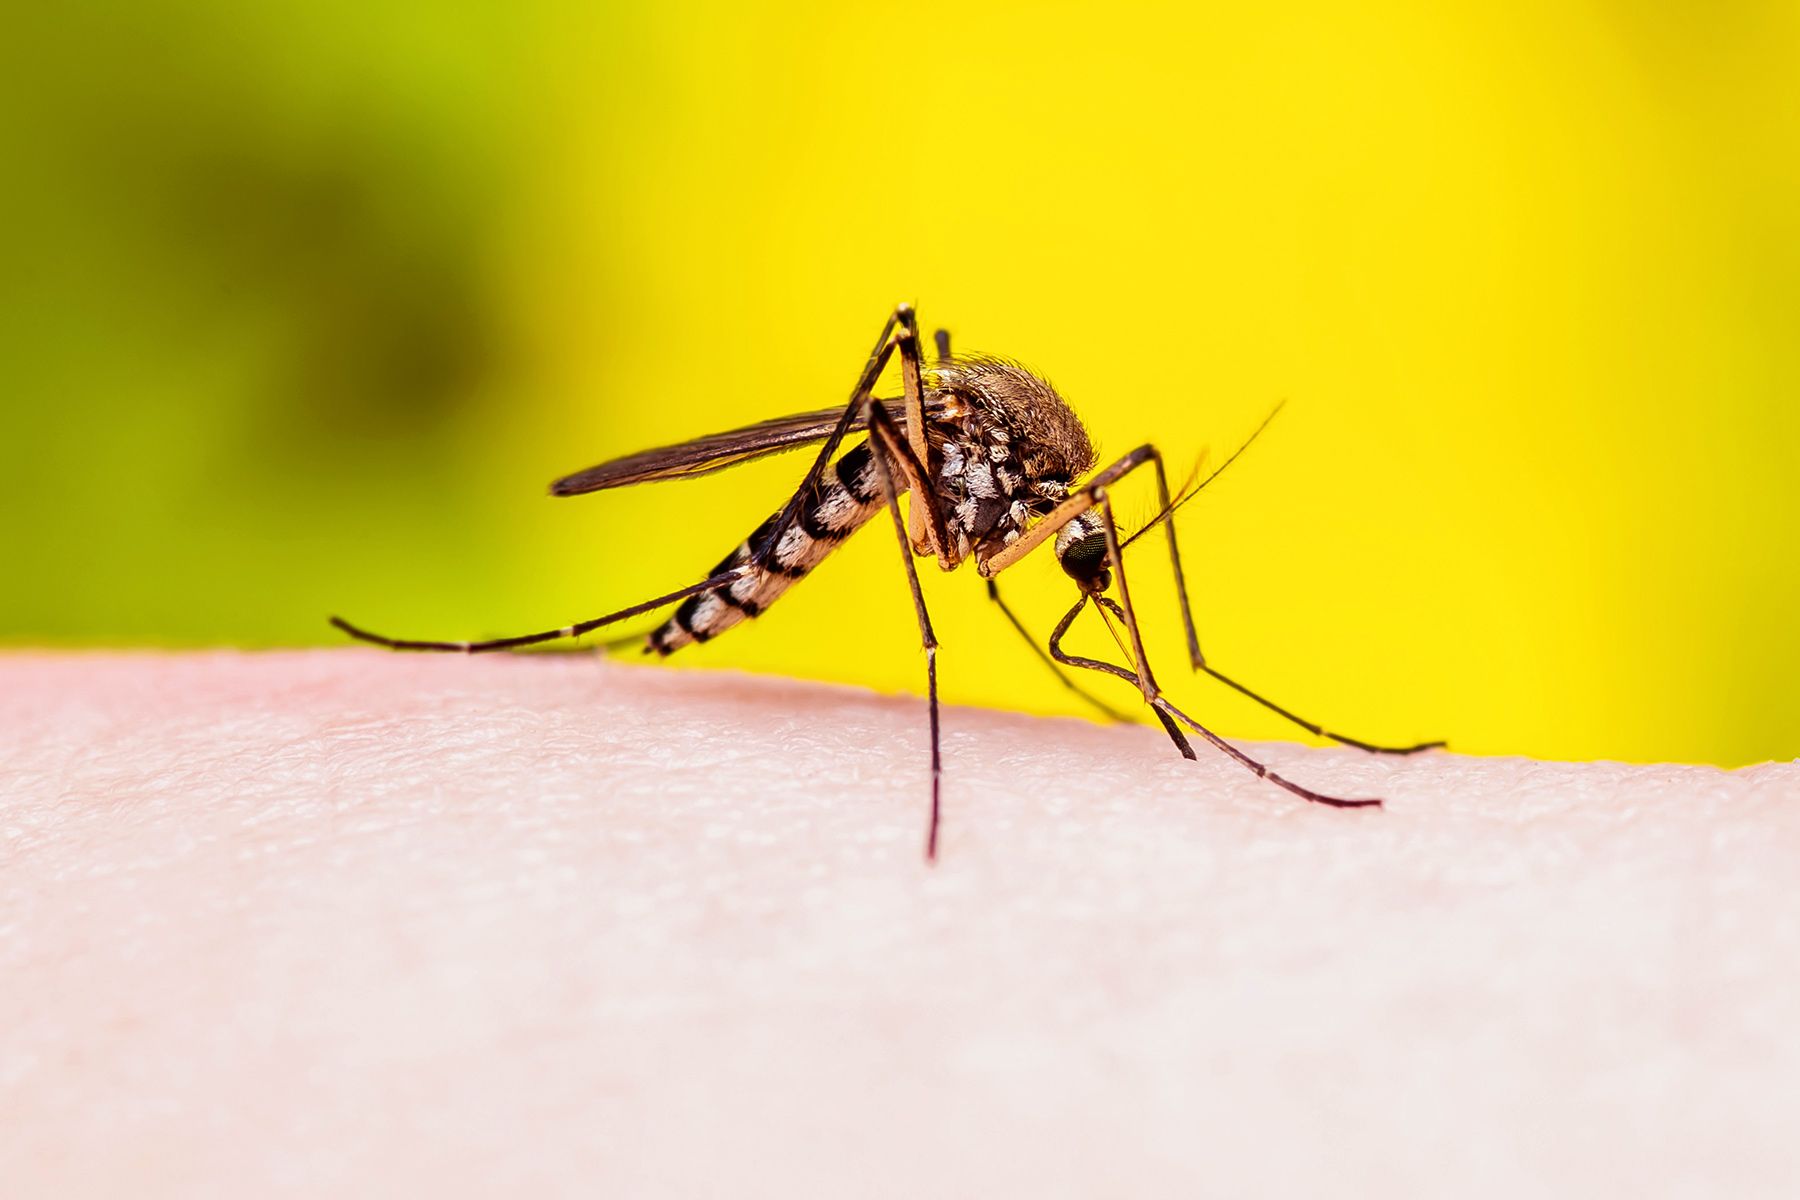 culex mosquito close up